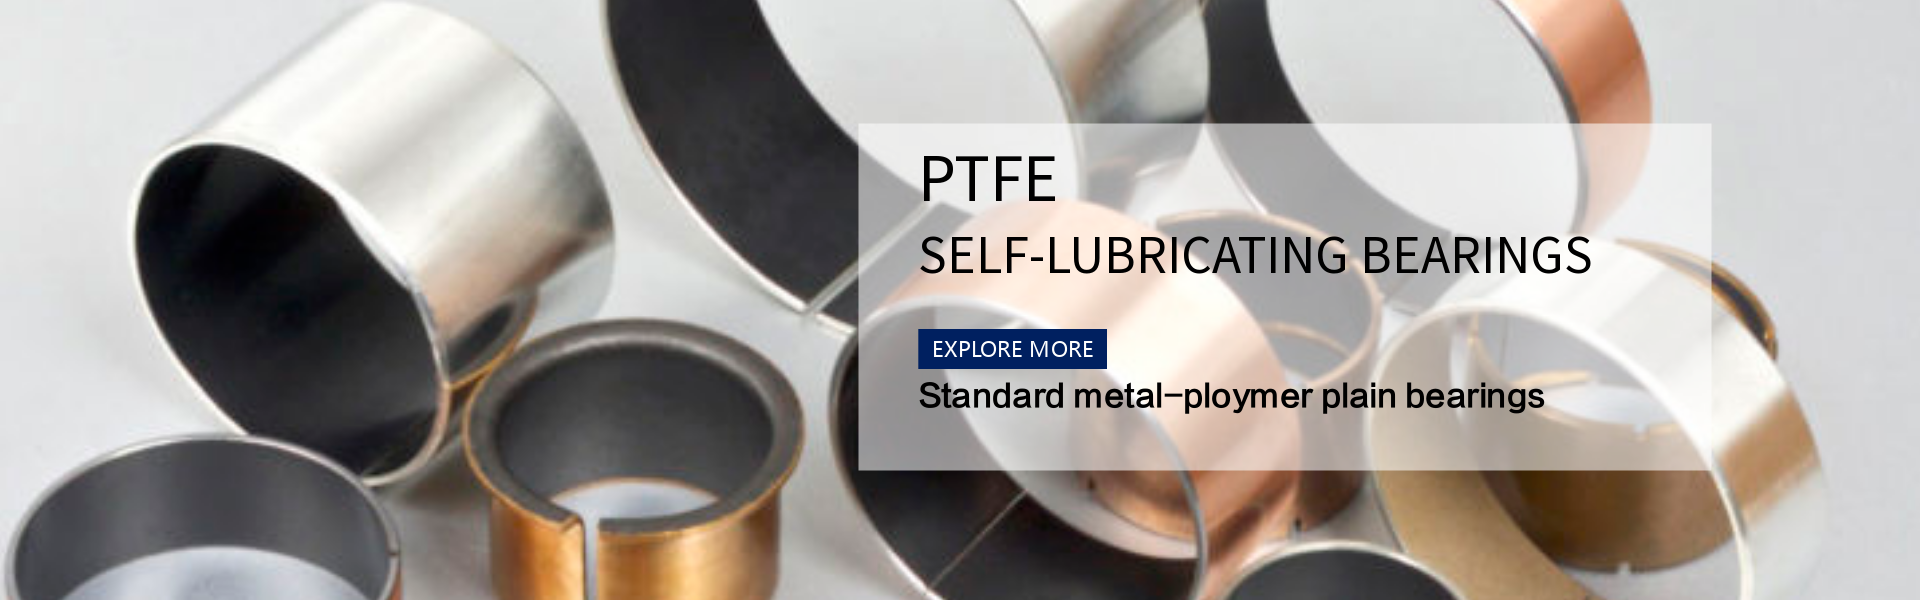 self-lubricating bearings PTFE material